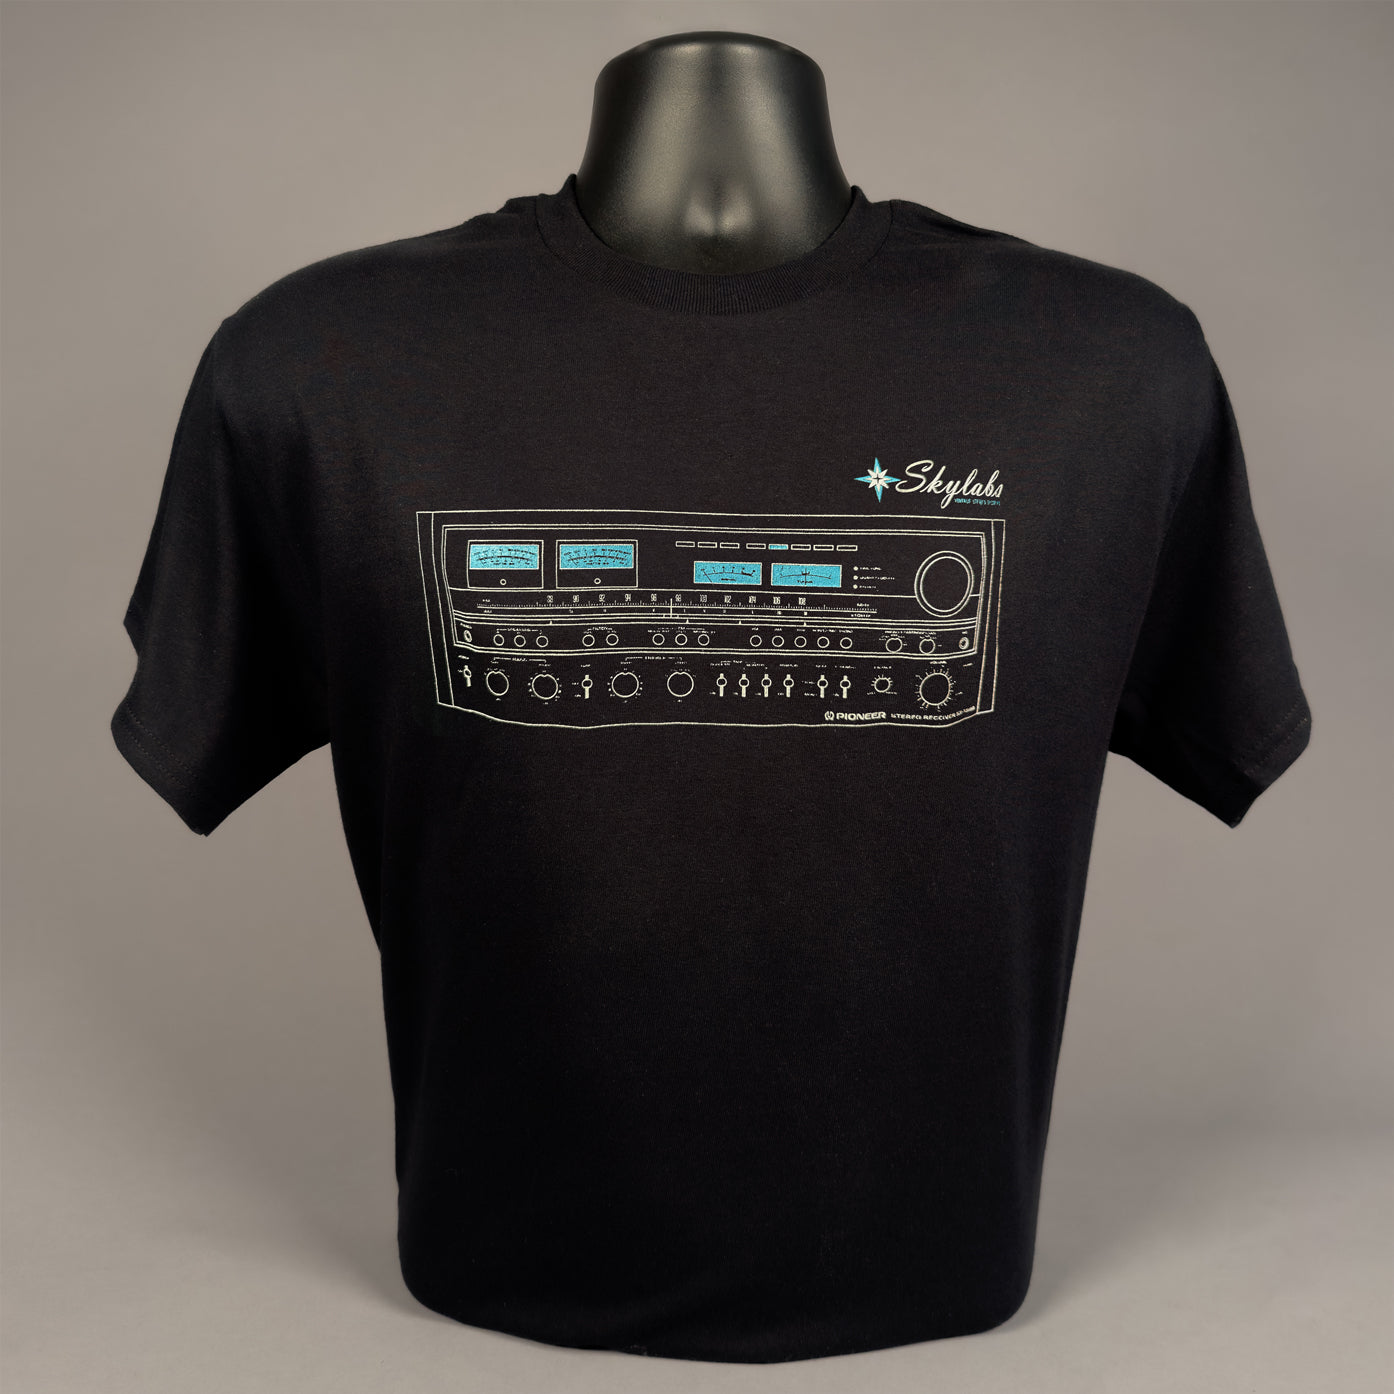 Skylabs Pioneer T-shirt